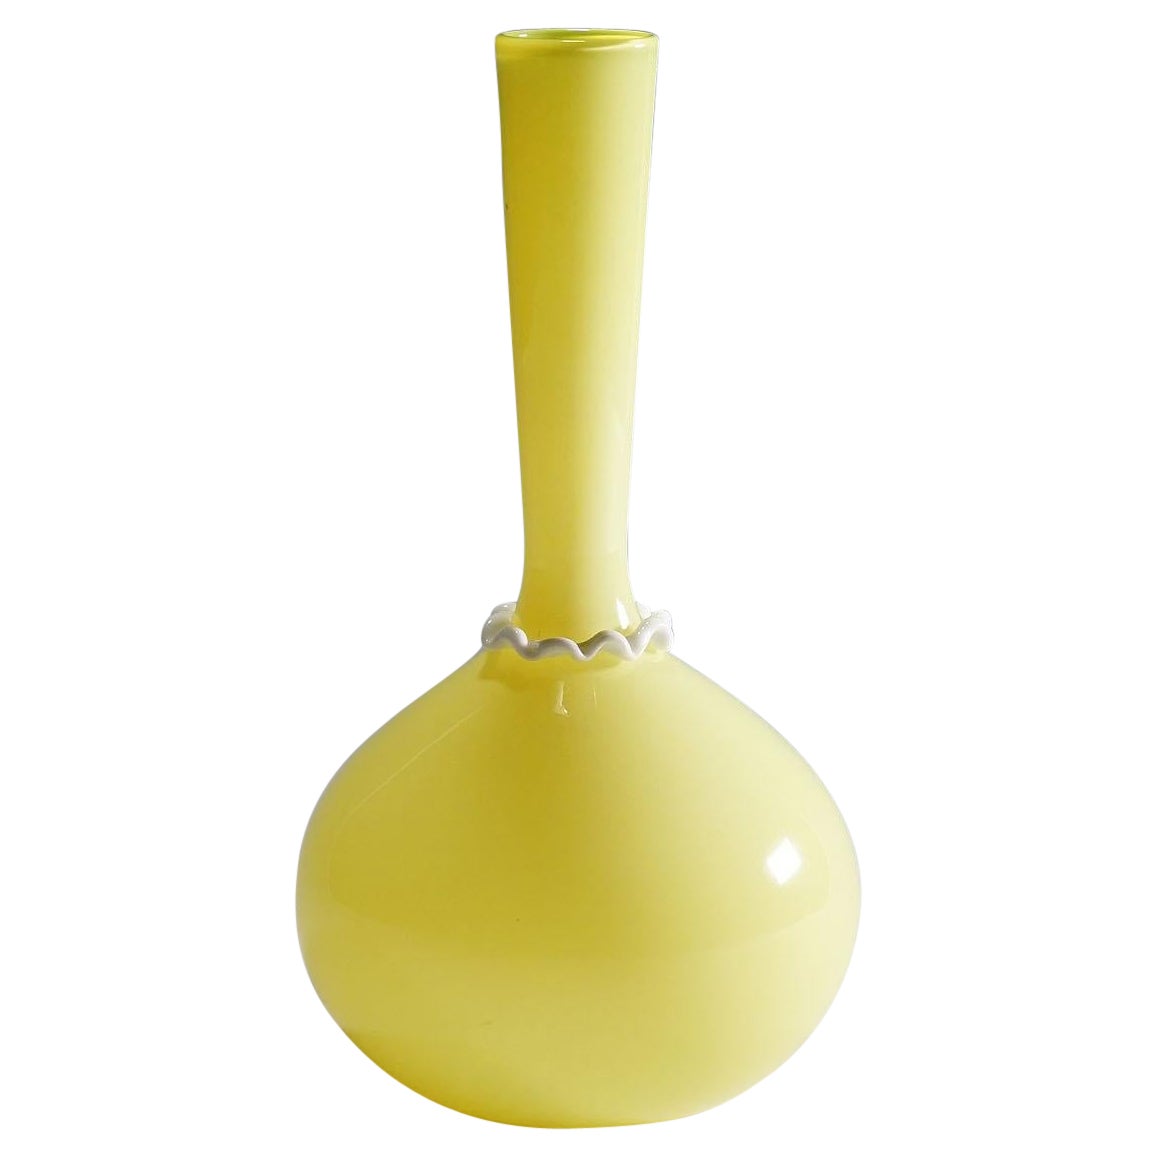 Vittorio Zecchin for Venini Soffiato Vase in Yellow and Lattimo Glass ca. 1950s For Sale